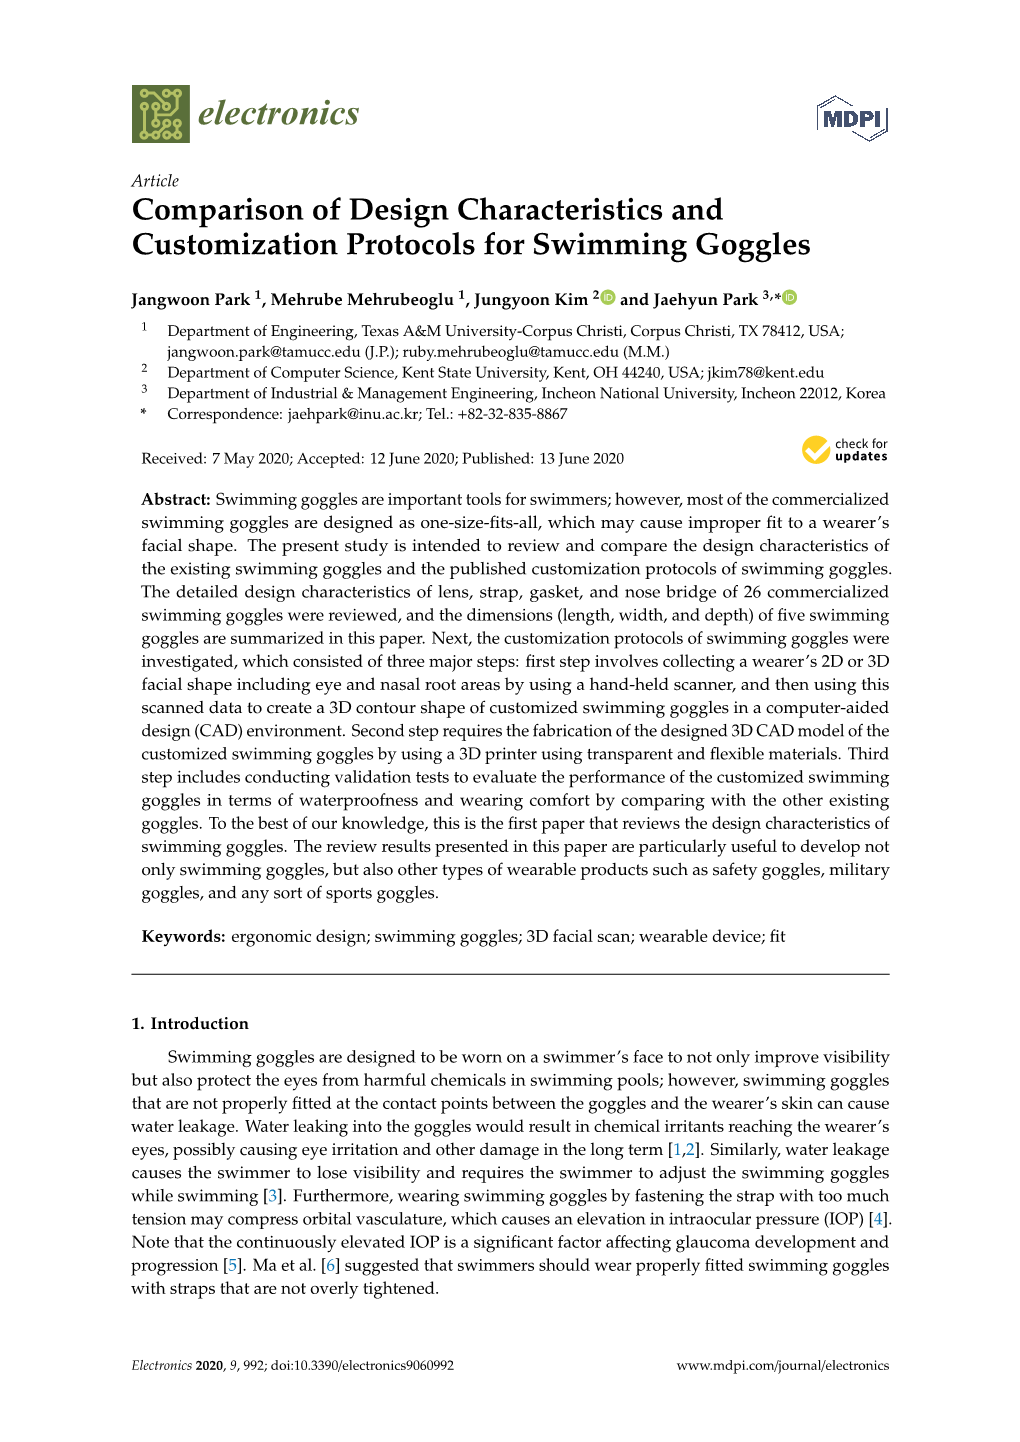 Comparison of Design Characteristics and Customization Protocols for Swimming Goggles